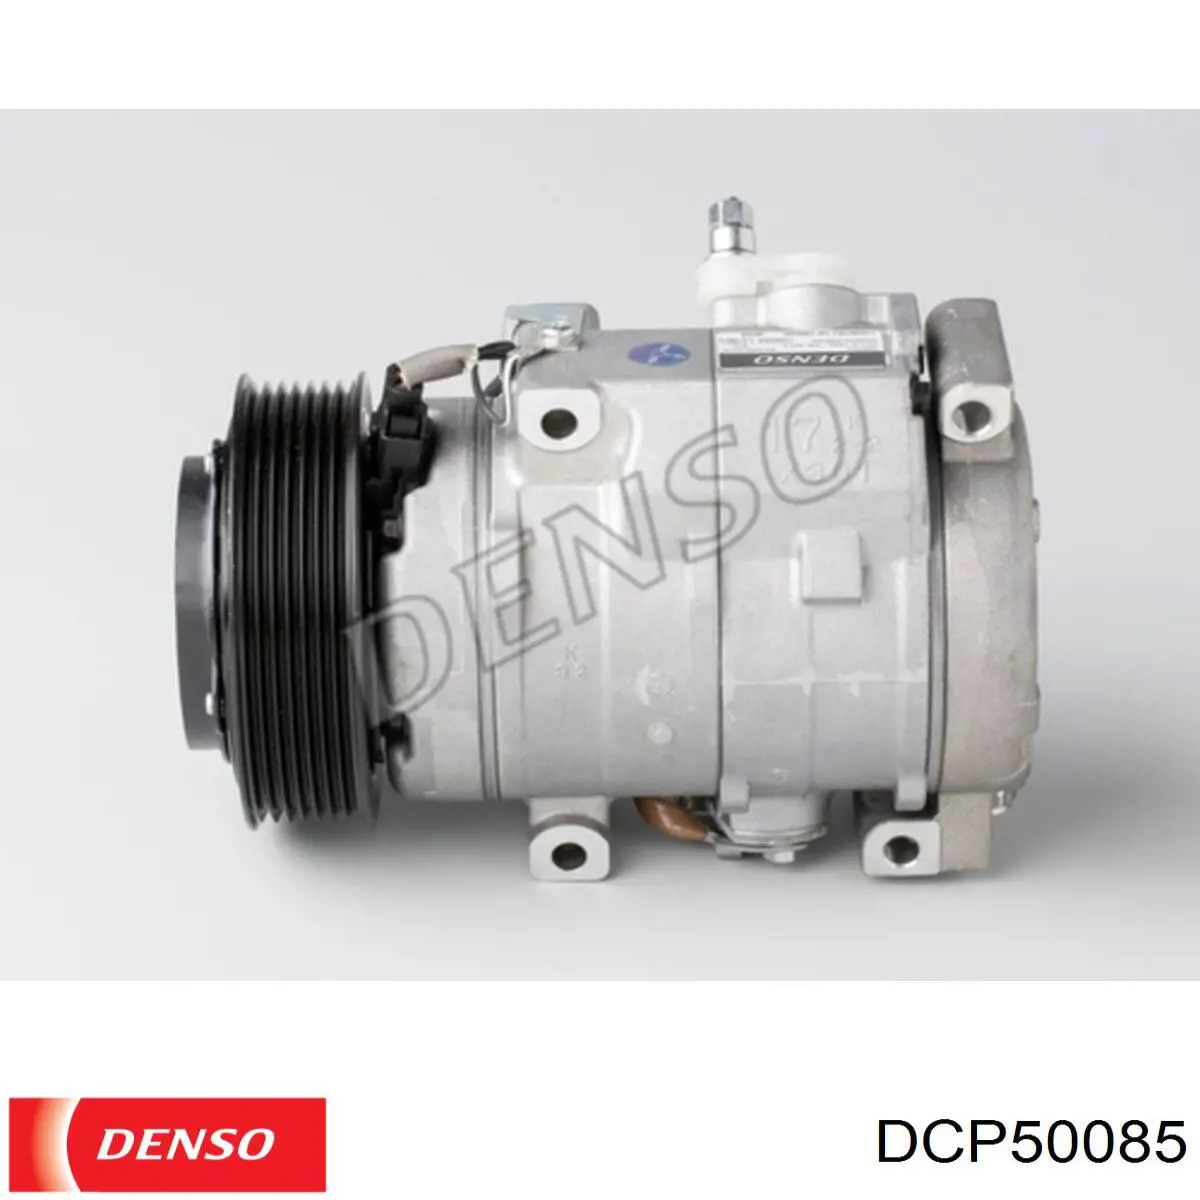 Compresor de aire acondicionado DCP50085 Denso